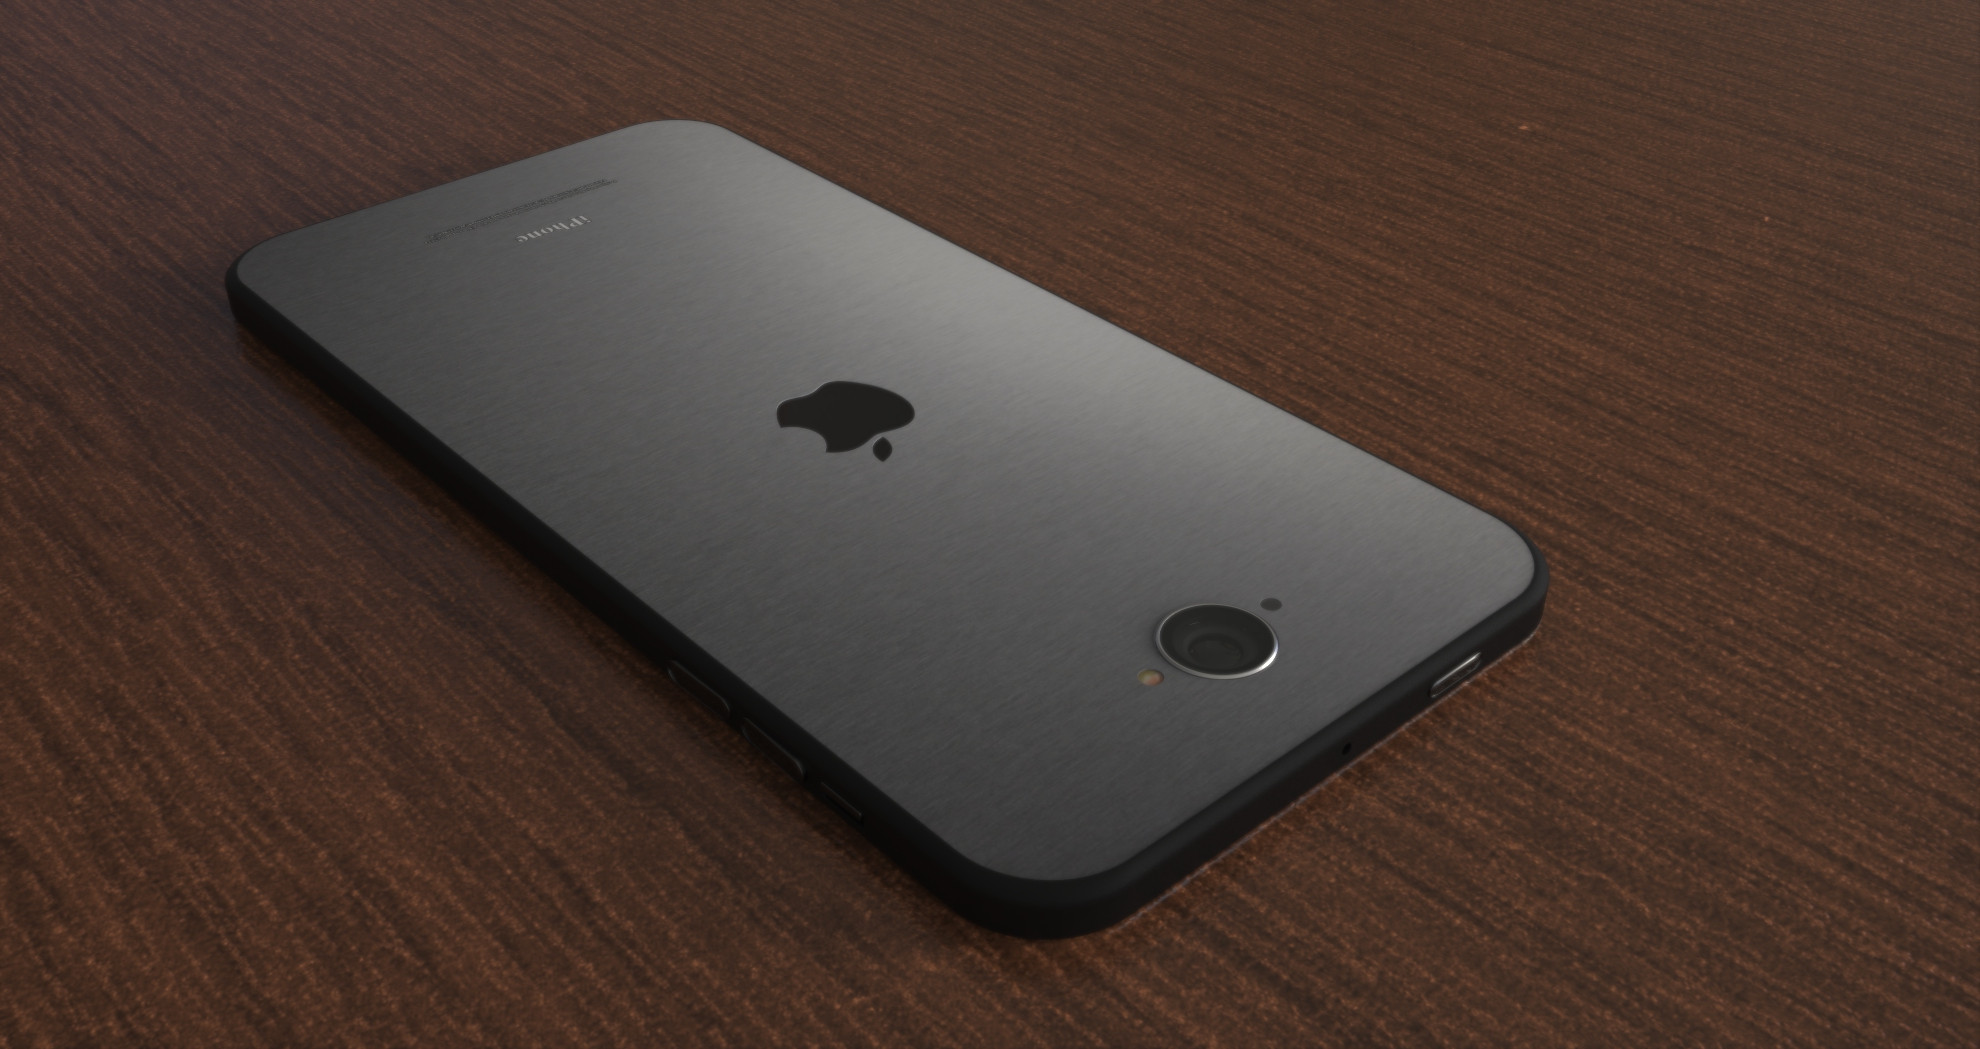 1433501077_apple-iphone-6s-concept-render-1.jpg